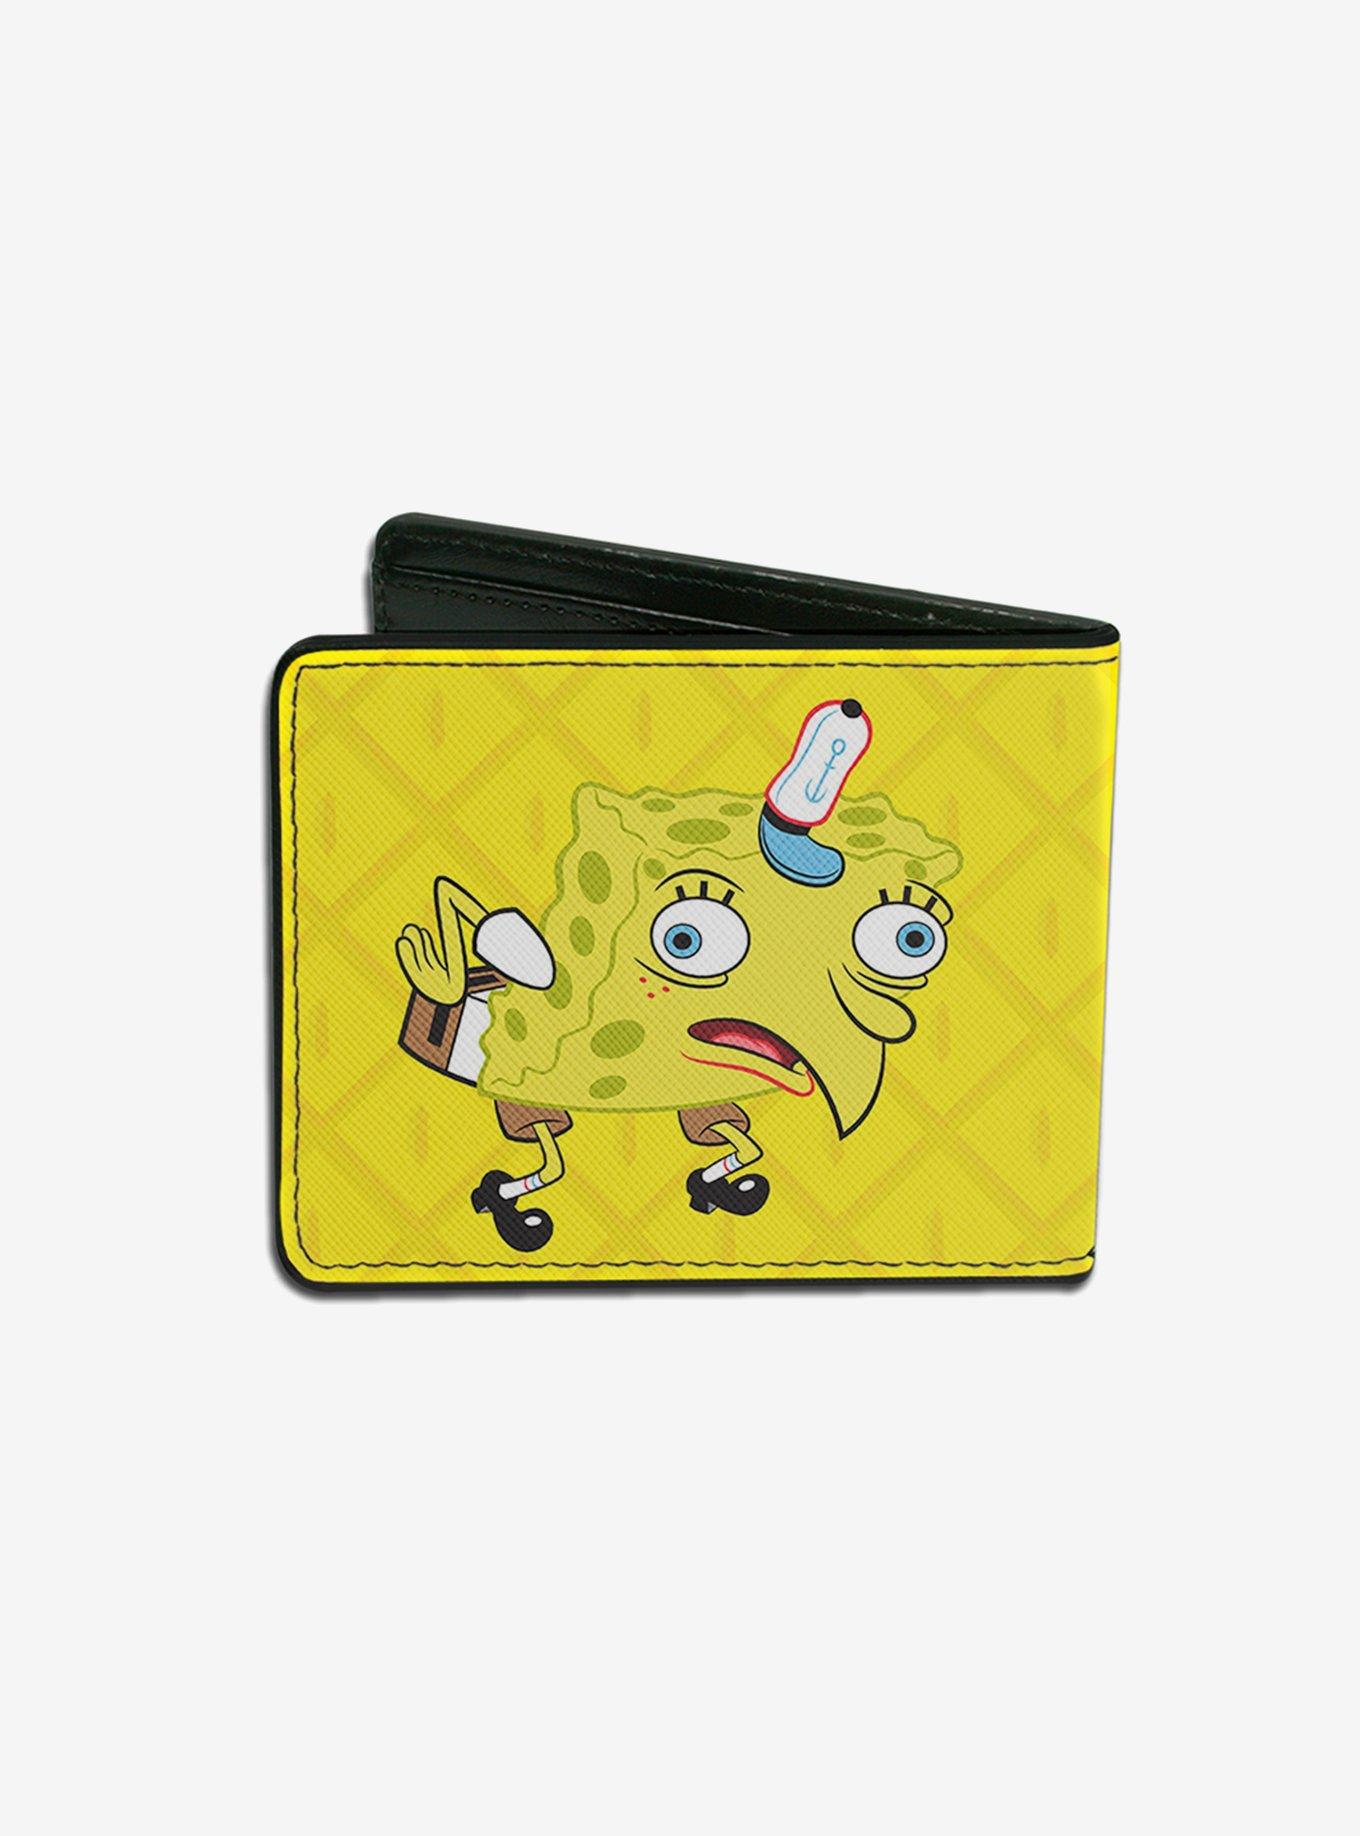 Spongebob Squarepants Mocking Pose Pineapple Close Up Bi-fold Wallet, , alternate